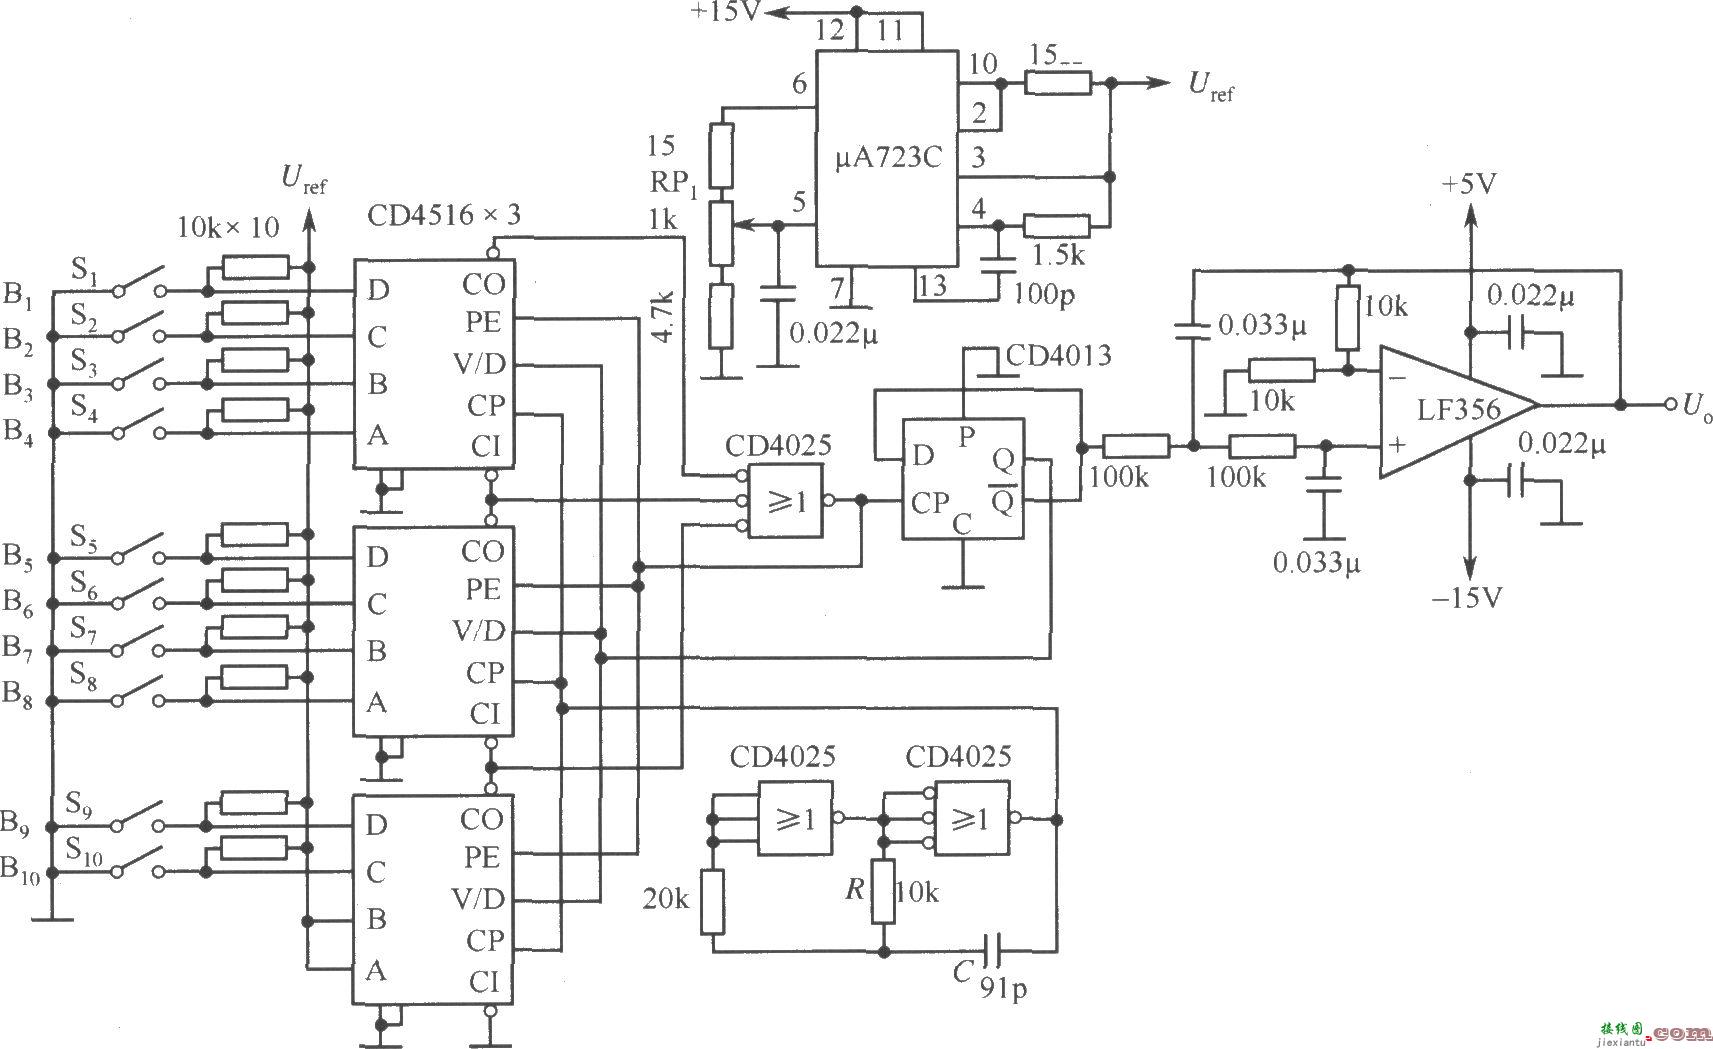 数字设定型标准电源电路(CD4516、μA723C)  第1张